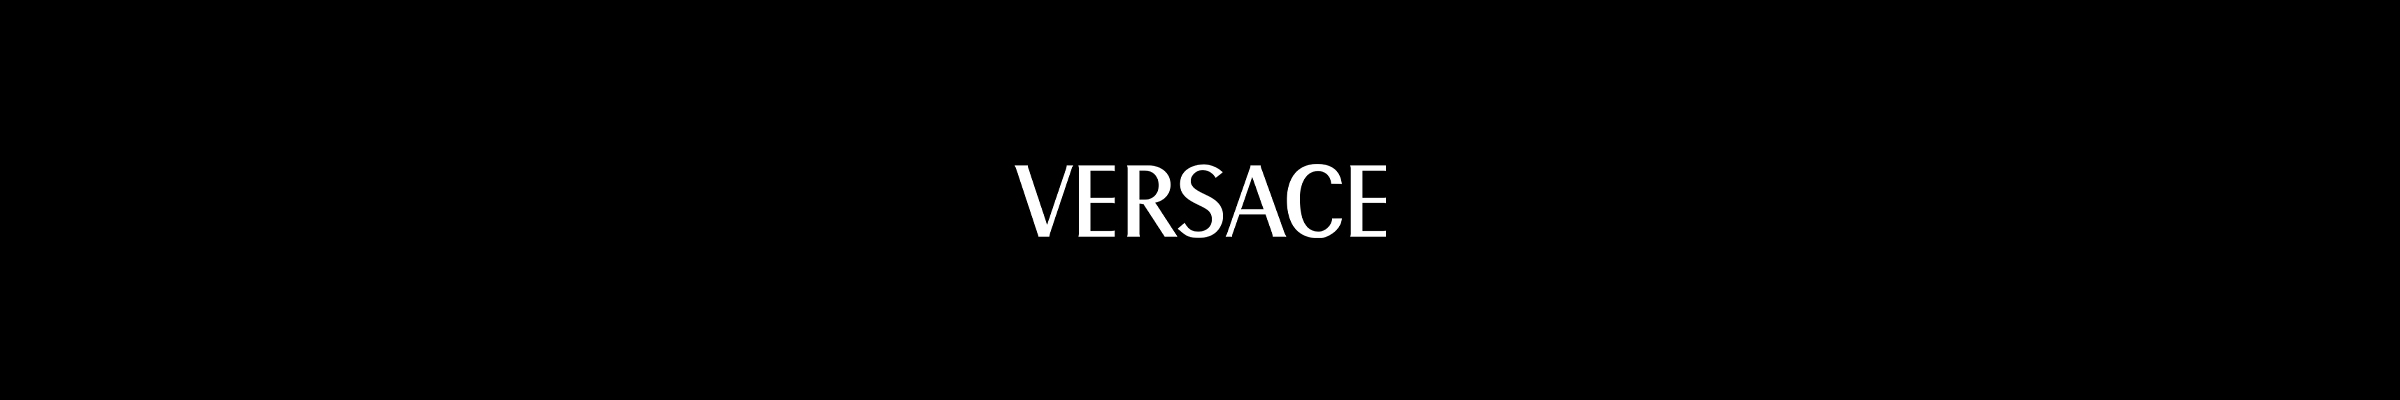 versace-banner